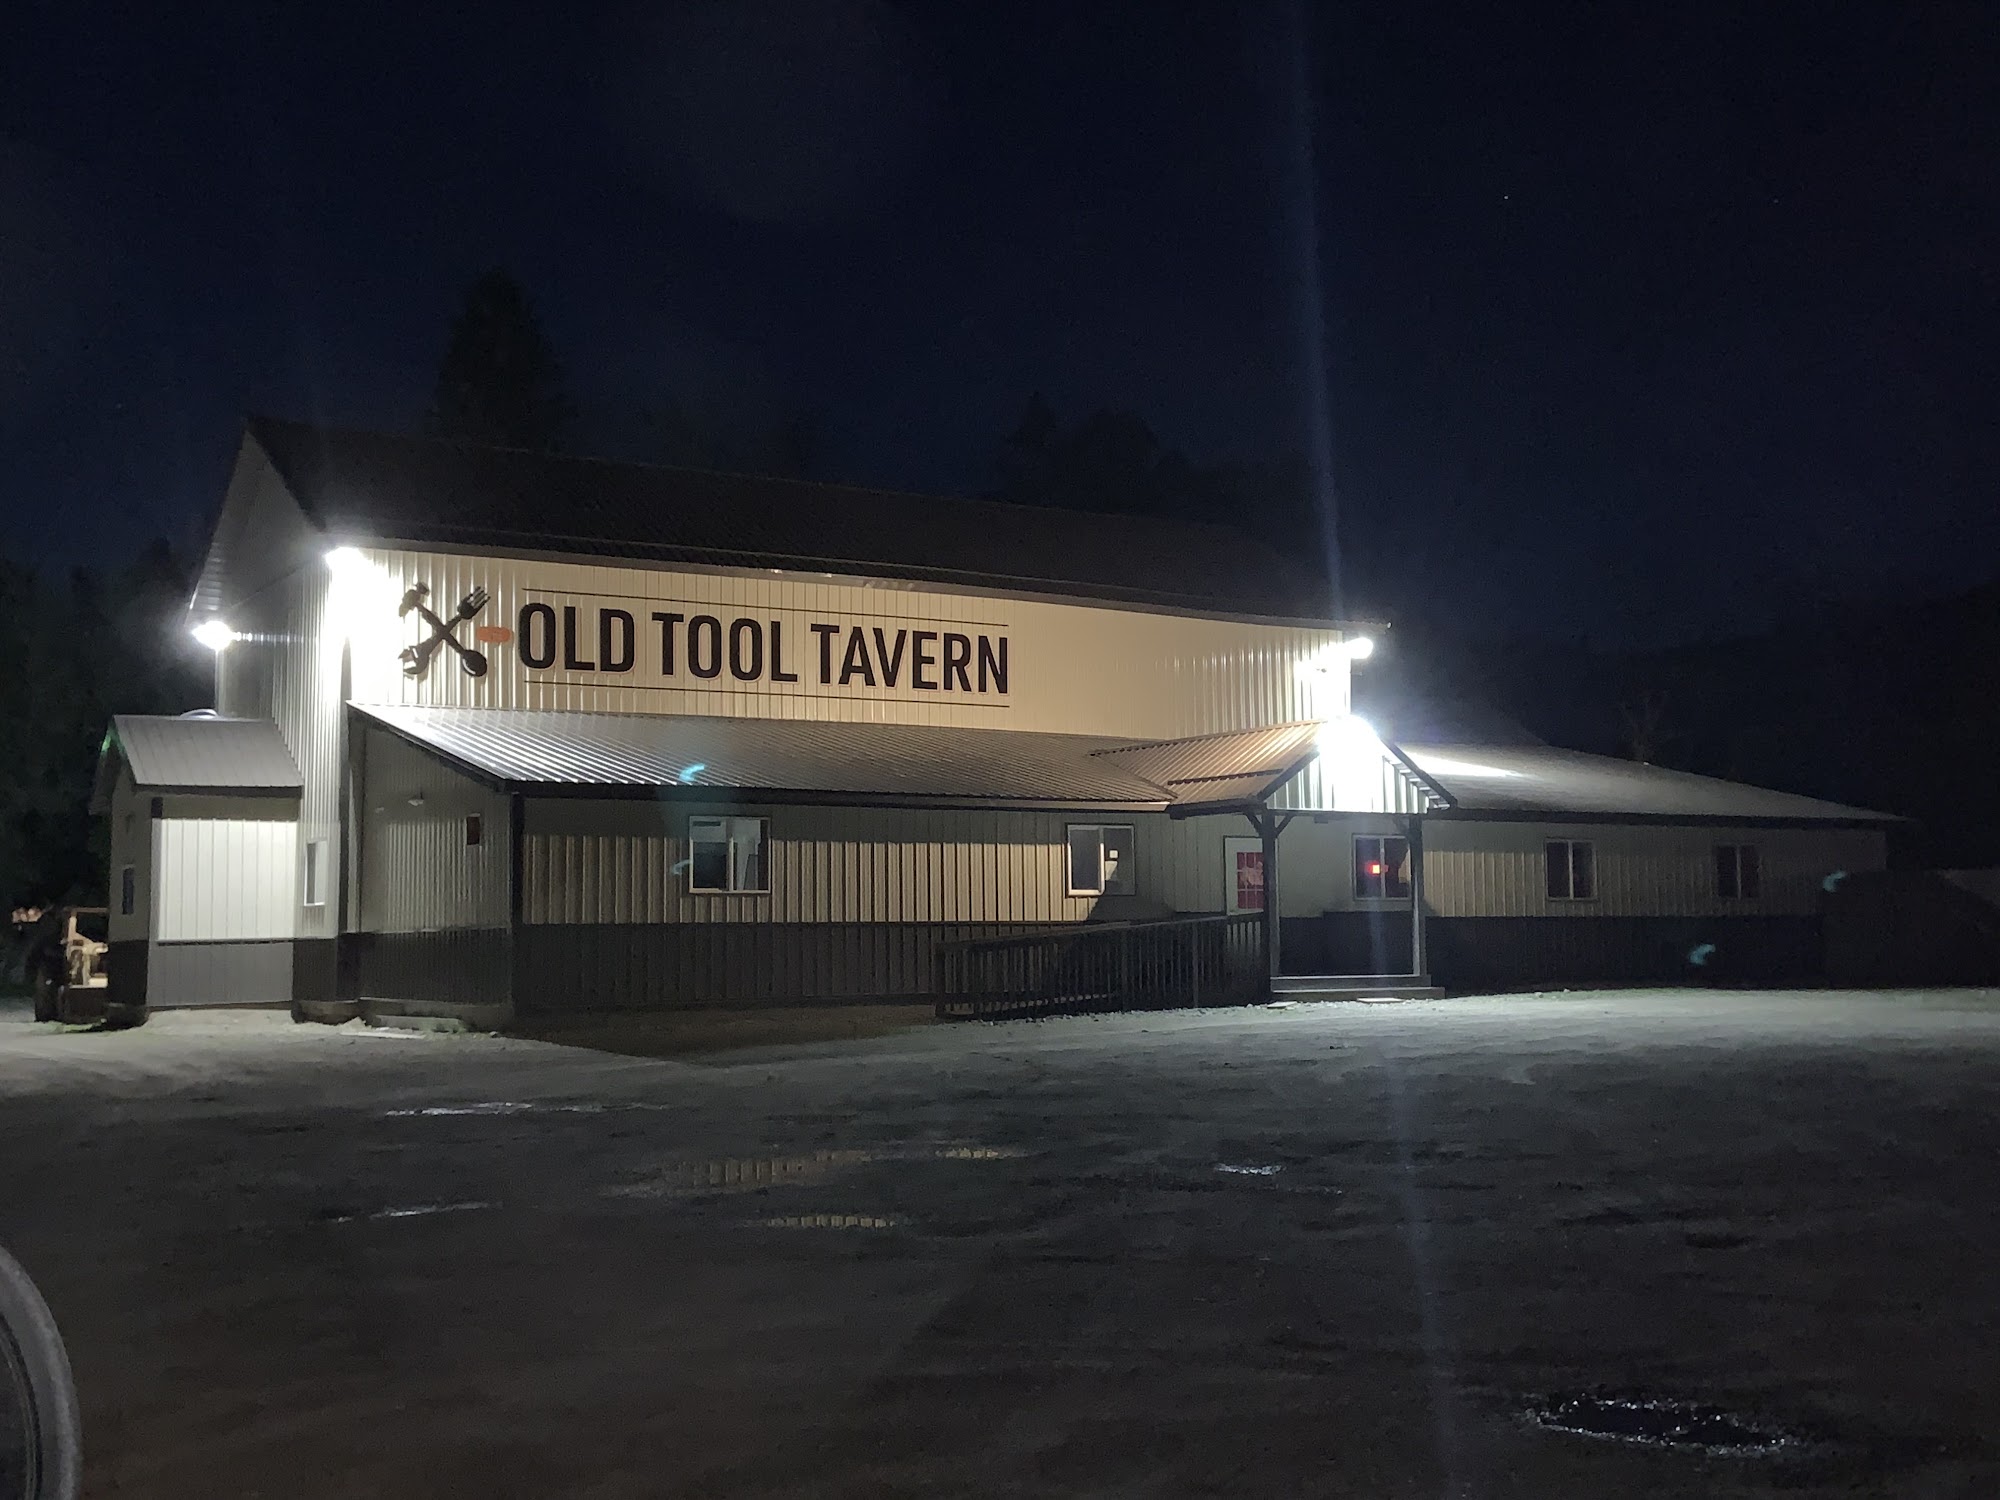 Old Tool Tavern